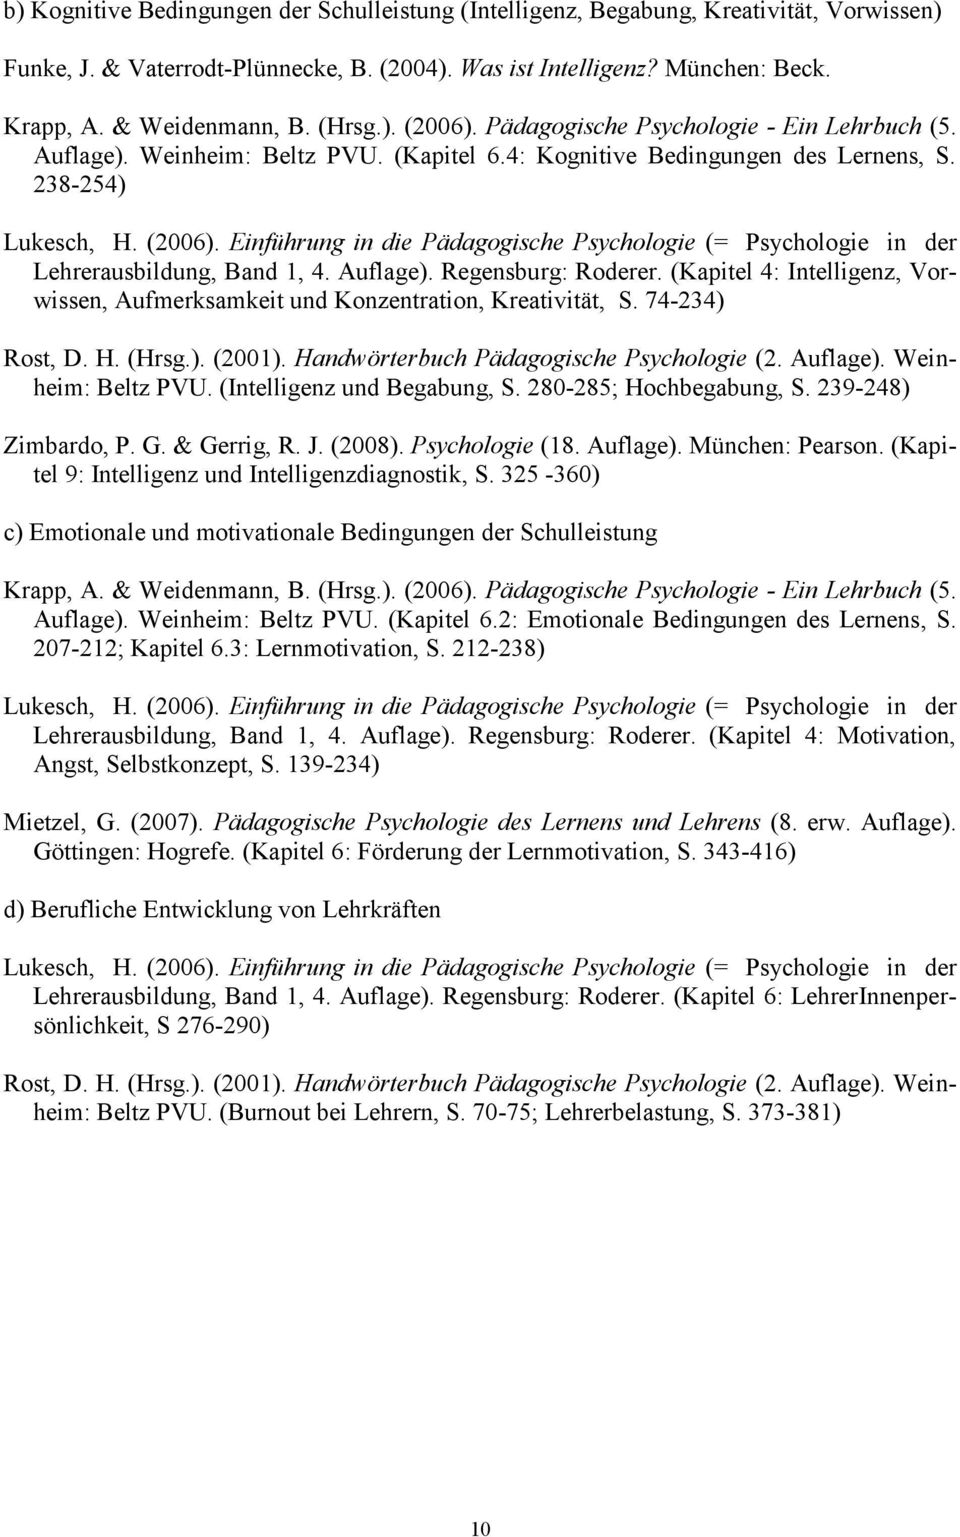 Auflage). Regensburg: Roderer. (Kapitel 4: Intelligenz, Vorwissen, Aufmerksamkeit und Konzentration, Kreativität, S. 74-234) Rost, D. H. (Hrsg.). (2001). Handwörterbuch Pädagogische Psychologie (2.